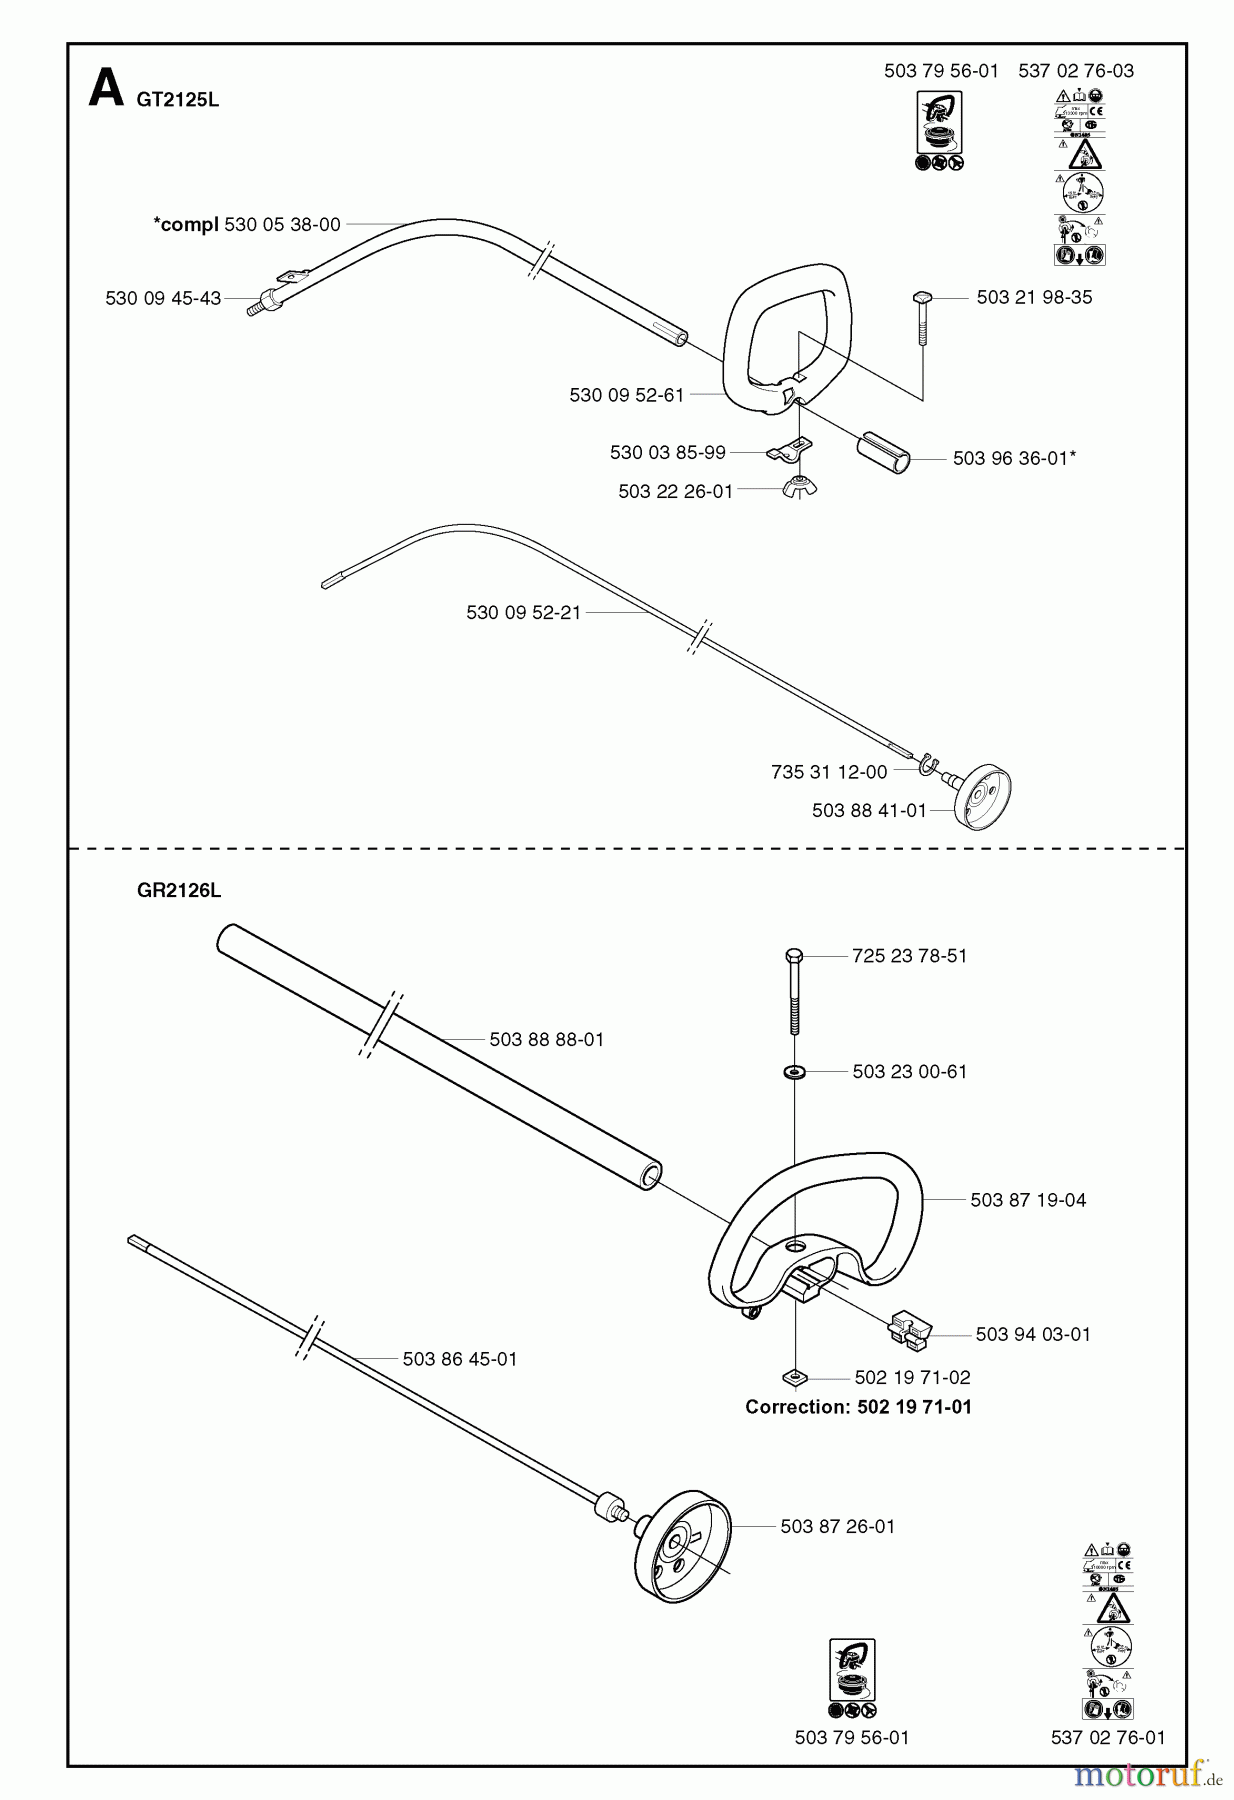  Jonsered Motorsensen, Trimmer GR2126D - Jonsered String/Brush Trimmer (2002-01) SHAFT HANDLE #2